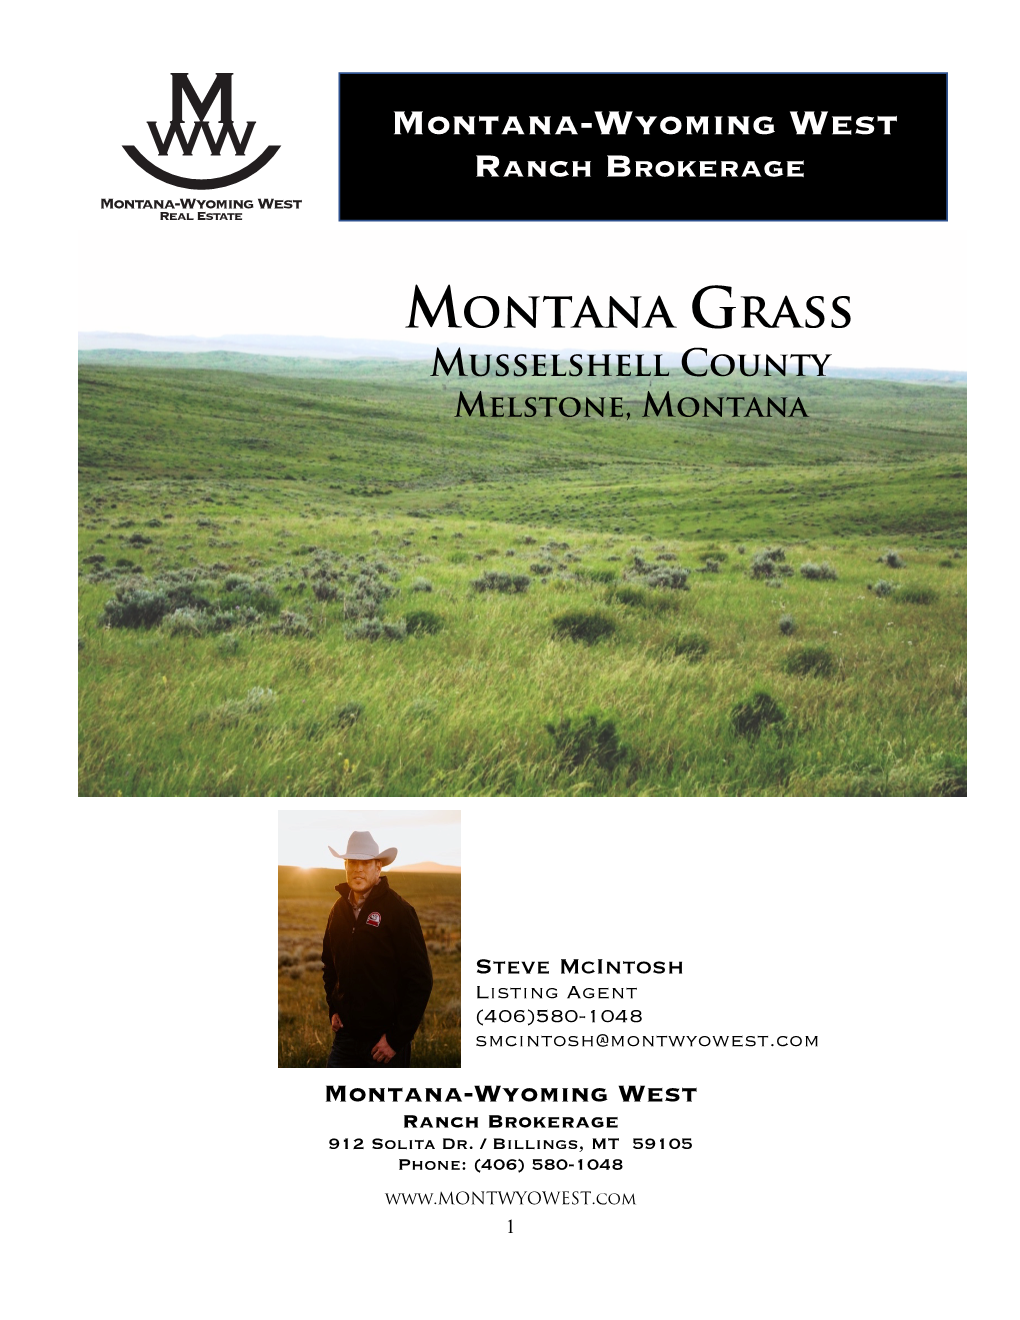 Montana Grass Musselshell County Melstone, Montana